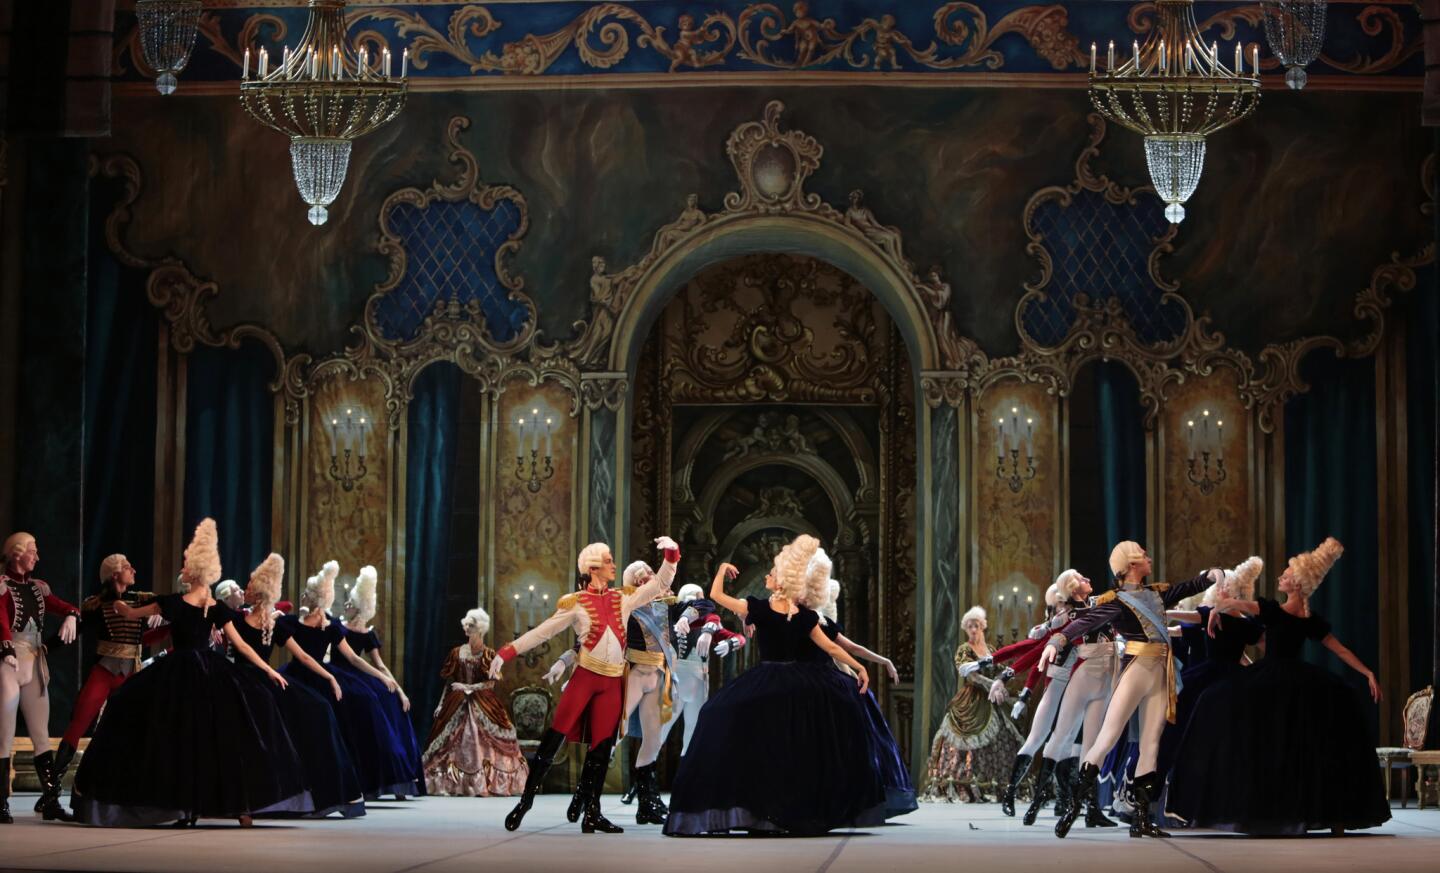 The Mikhailovsky Ballet